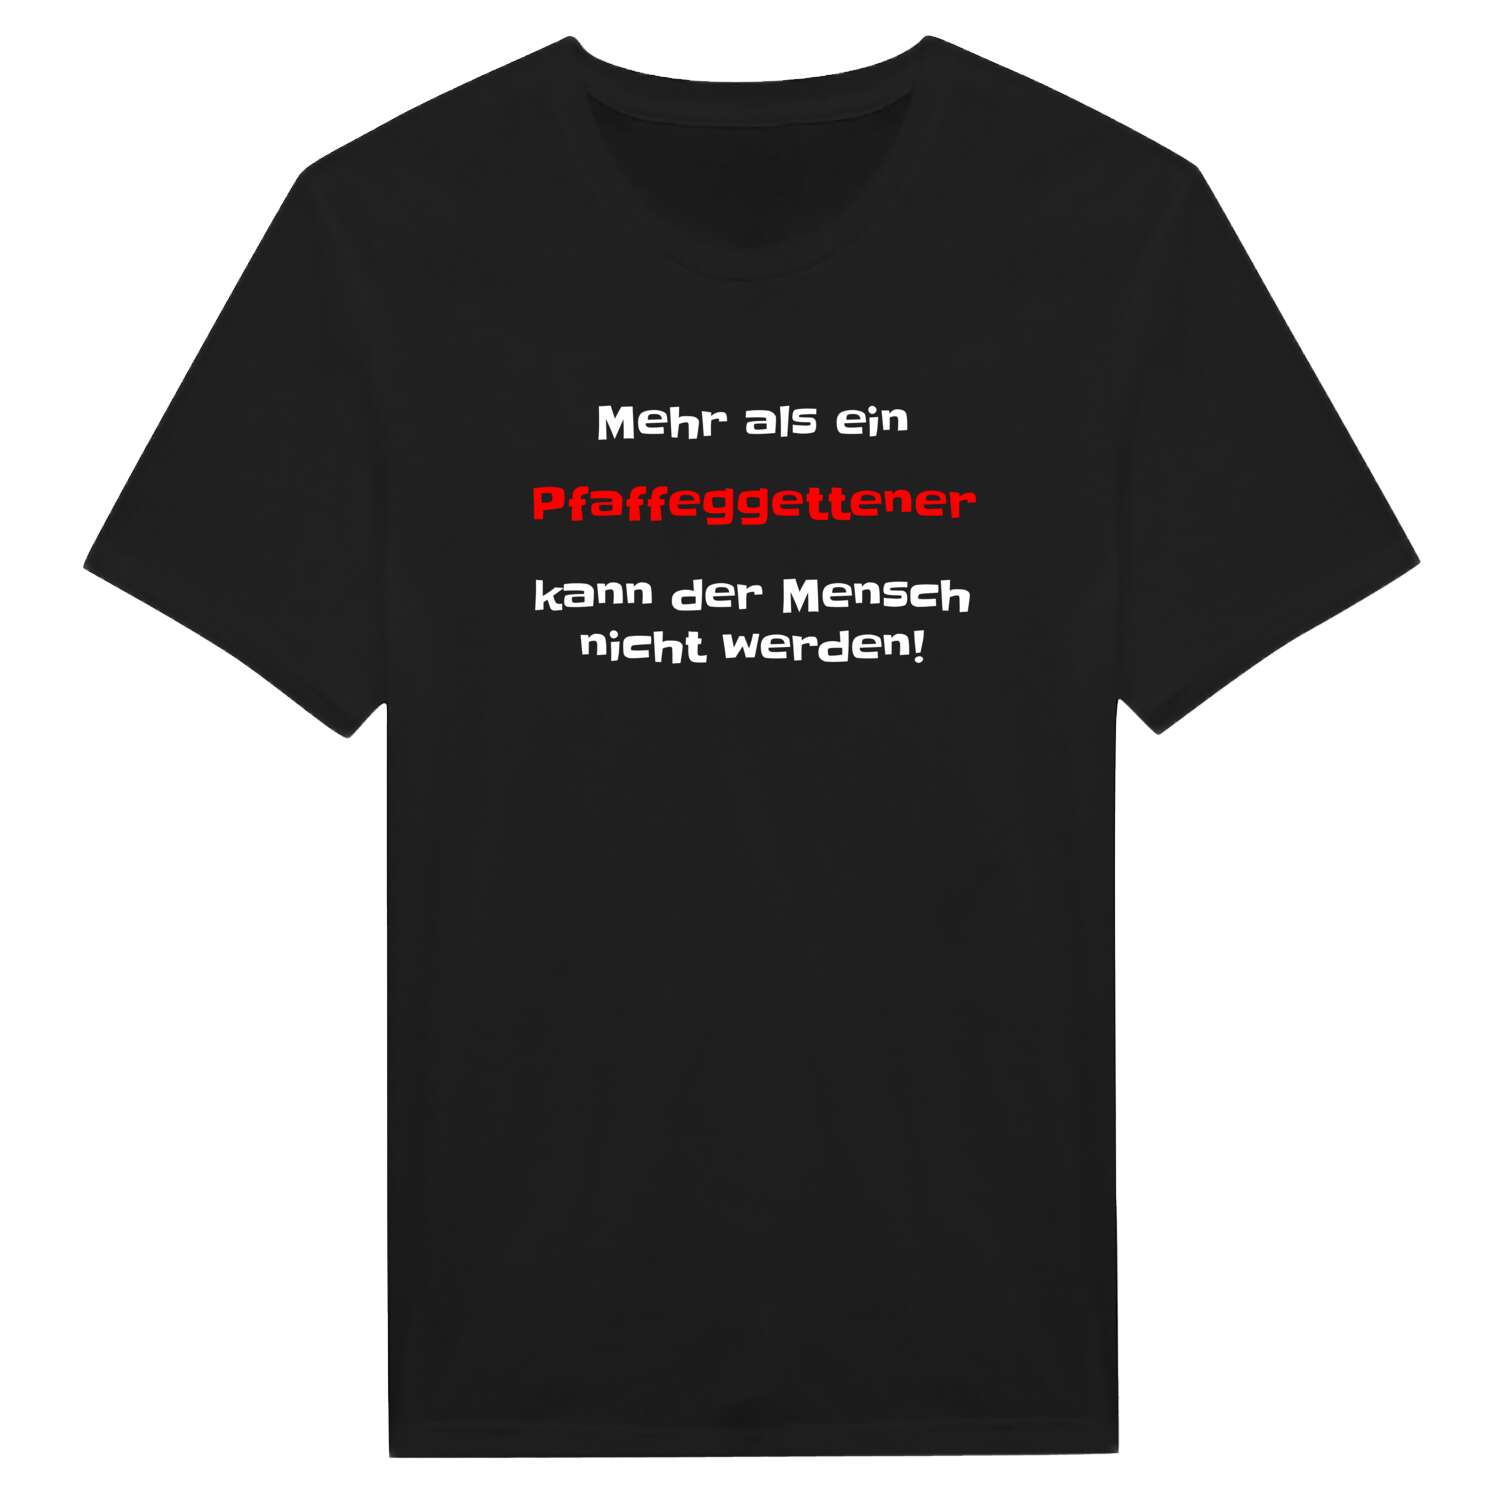 Pfaffeggetten T-Shirt »Mehr als ein«